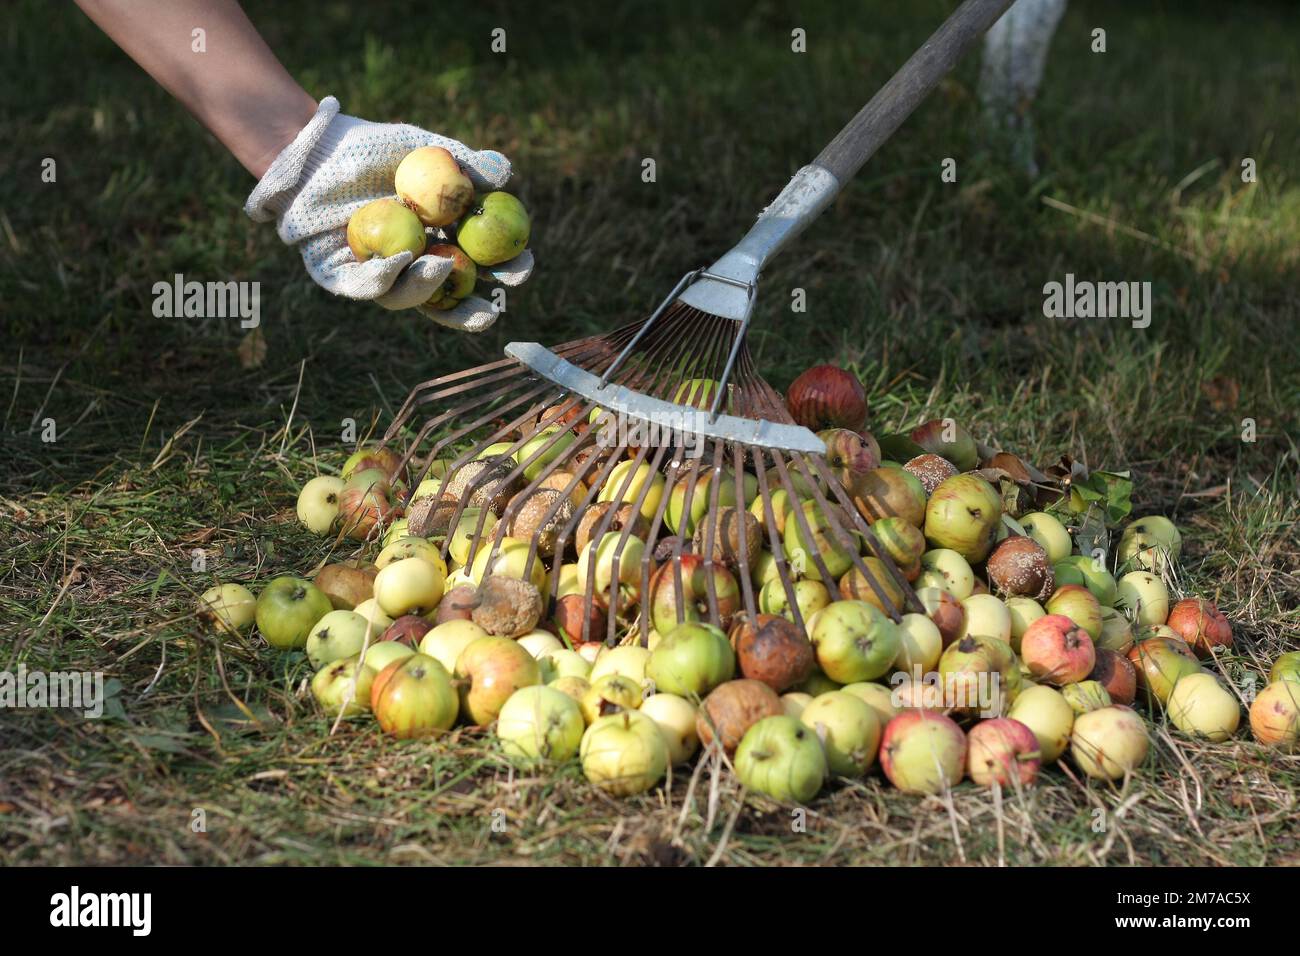 Gärtner in Gartenhandschuhen hte im Herbst einen Haufen von verfallenen und infizierten Fruchtfäule Äpfel und trockenen Blättern auf dem verwelkten Gras. Stockfoto